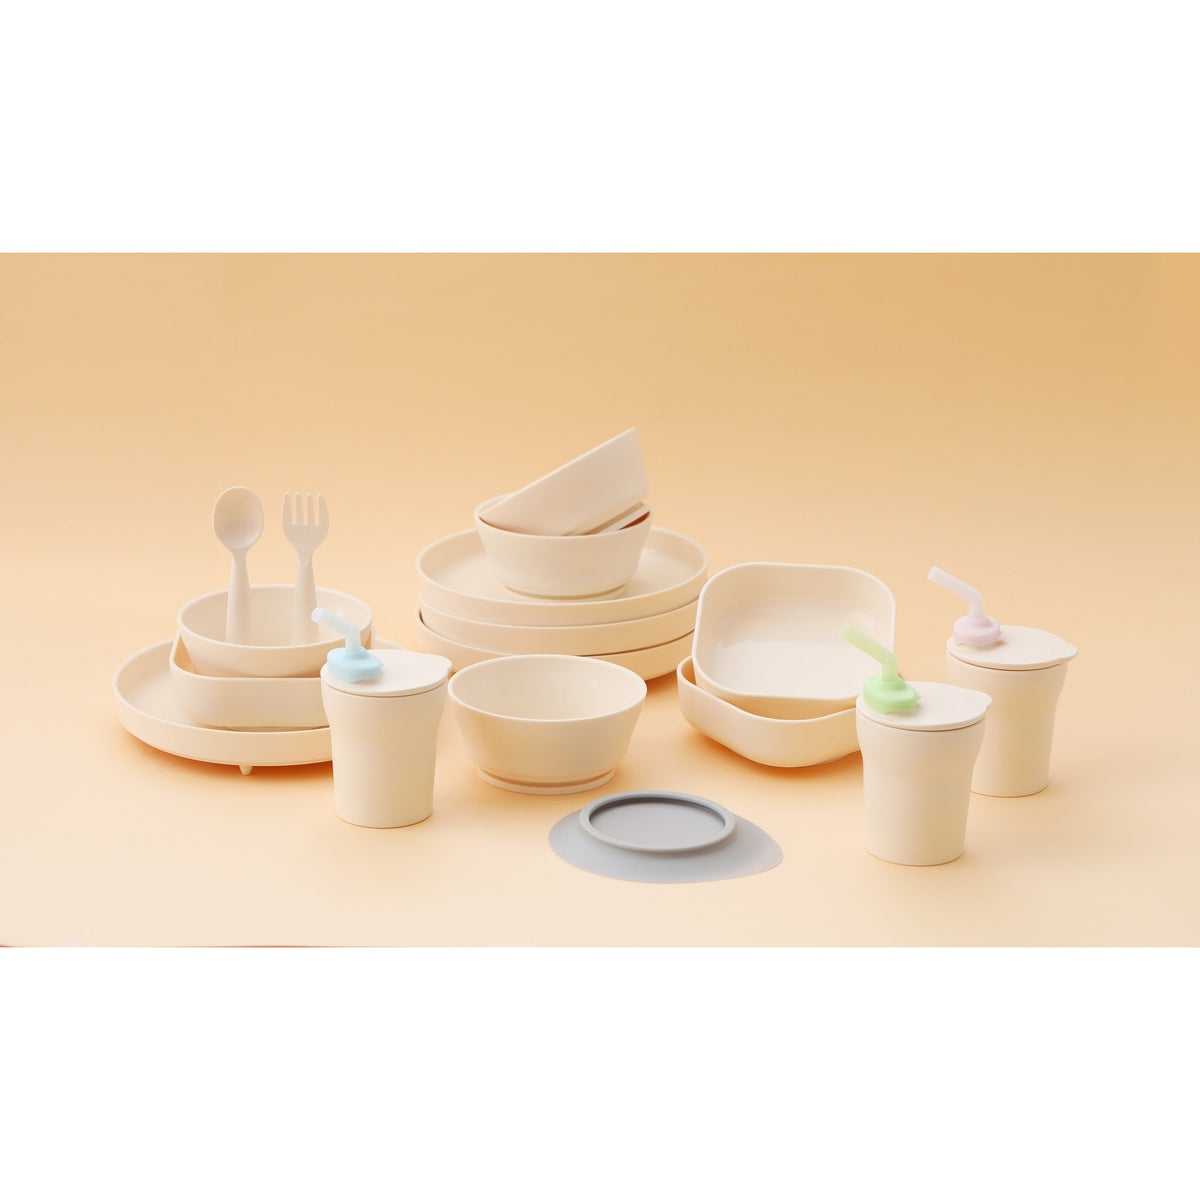 miniware-snack-bowl-set-pla-suction-bowl-vanilla-silicone-cover-in-aqua- (14)